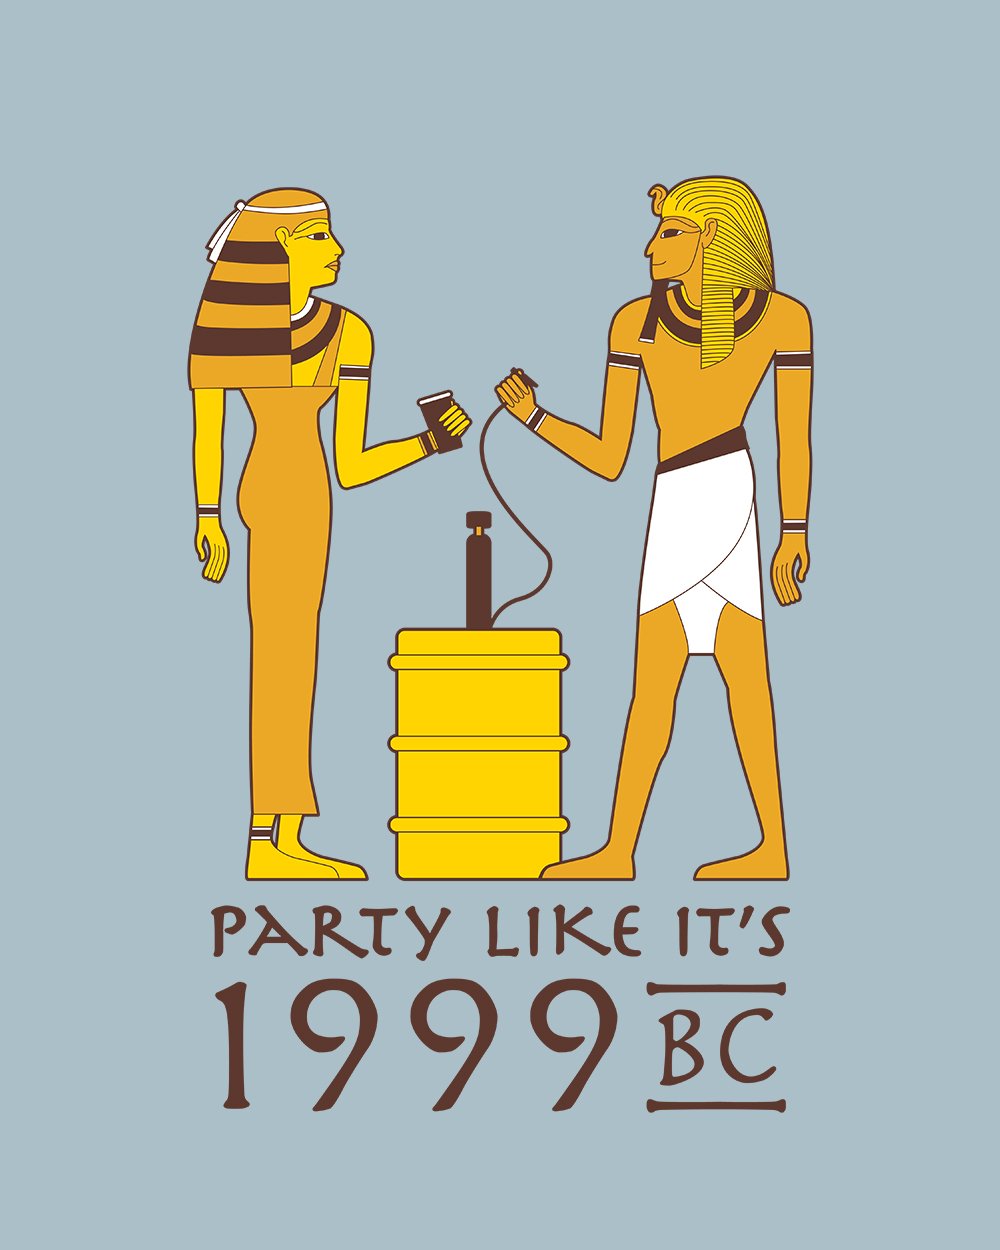 Party Like it's 1999 BC T-Shirt Australia Online #colour_pale blue